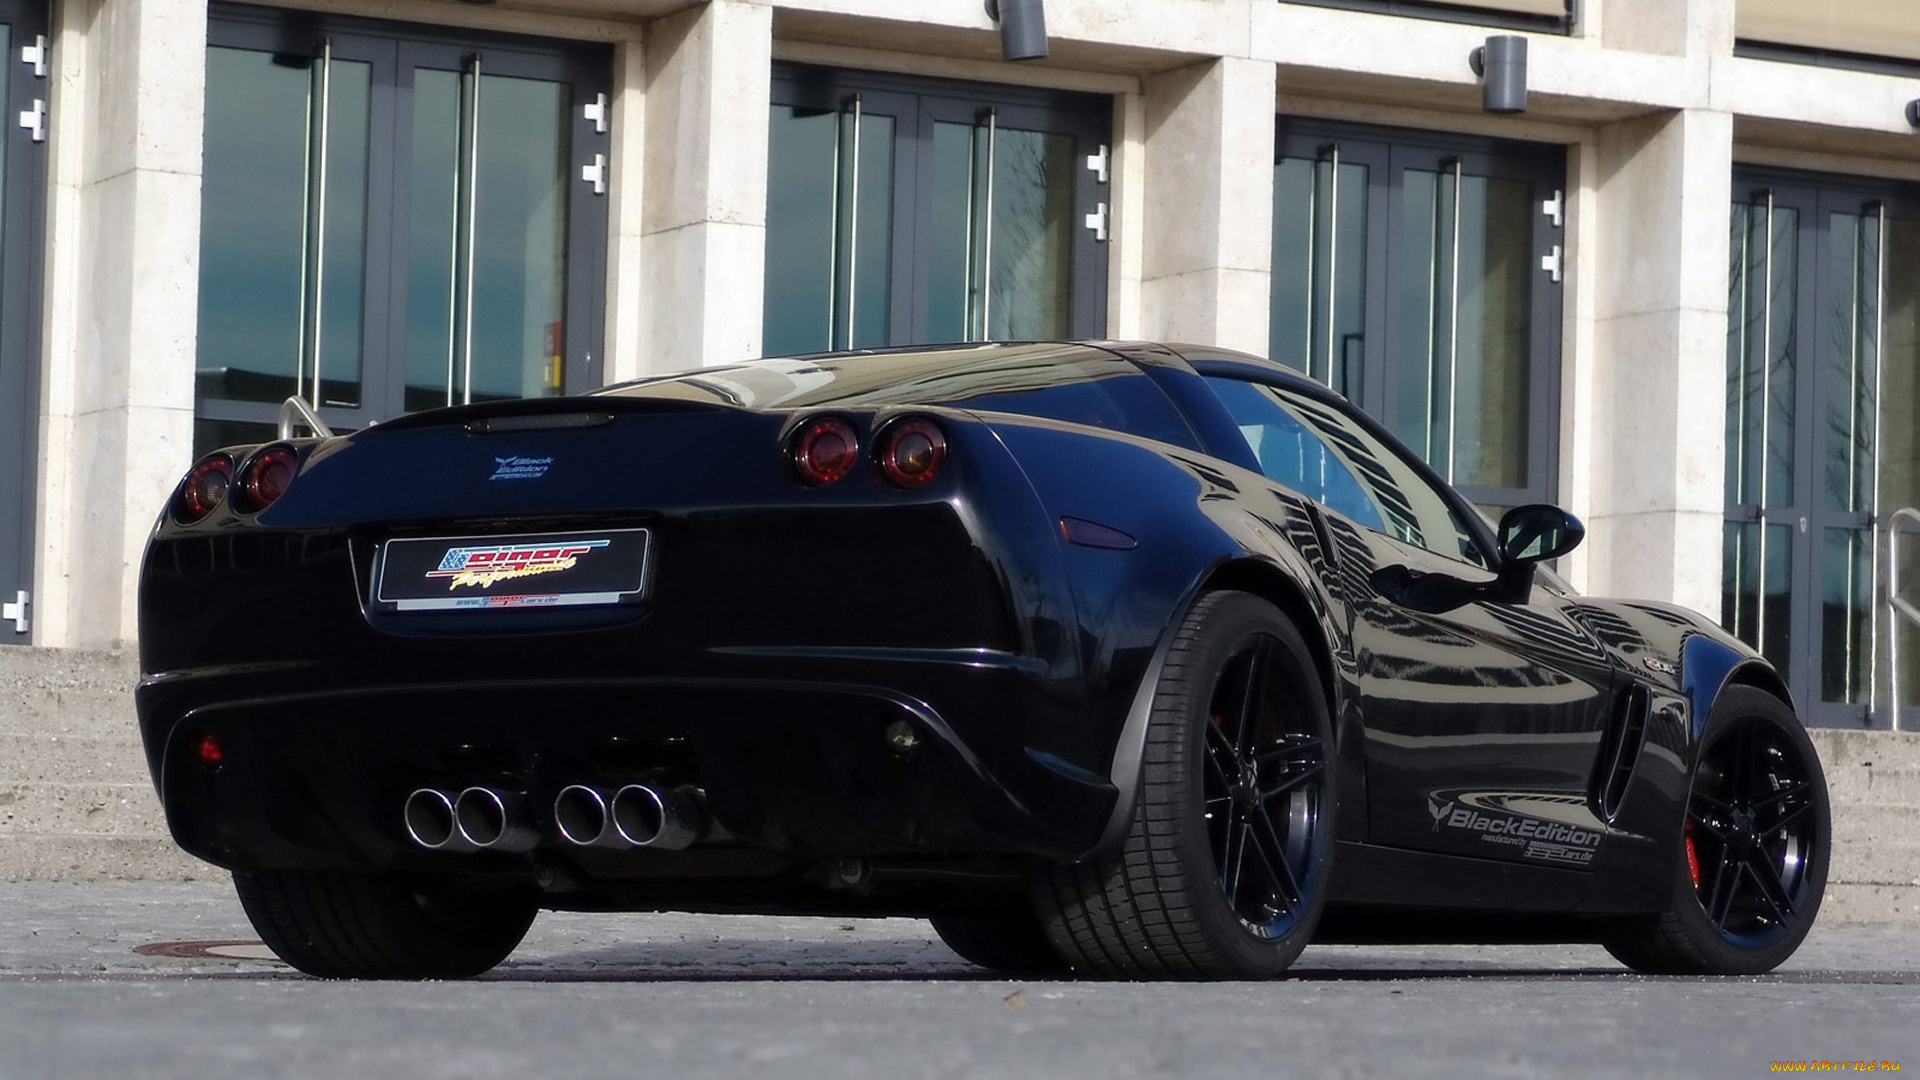 geiger, corvette, z06, black, edition, 2008, автомобили, corvette, z06, geiger, 2008, edition, black